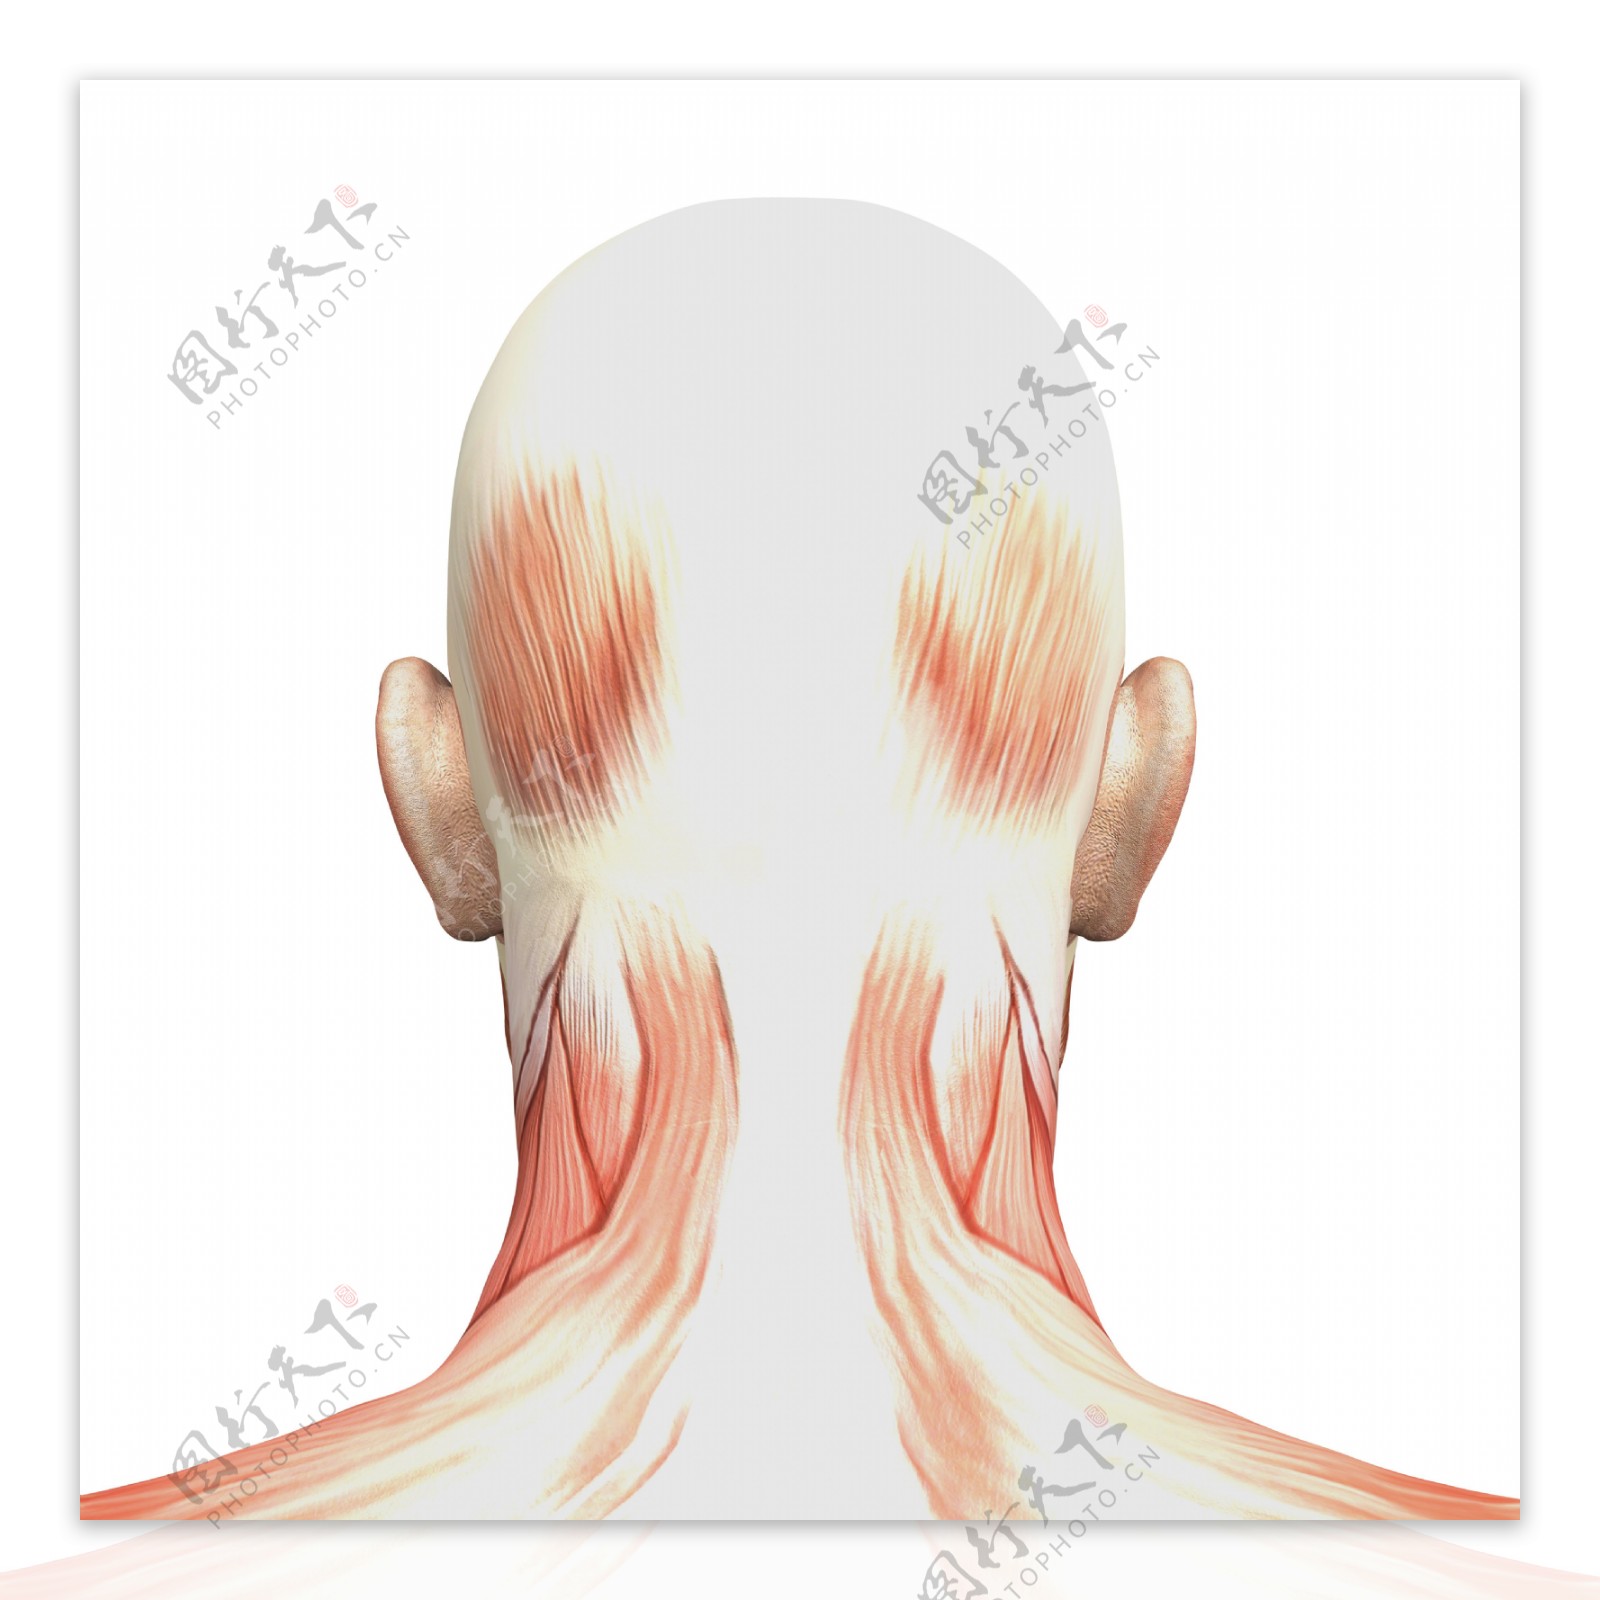 人体后颈部肌肉组织图片